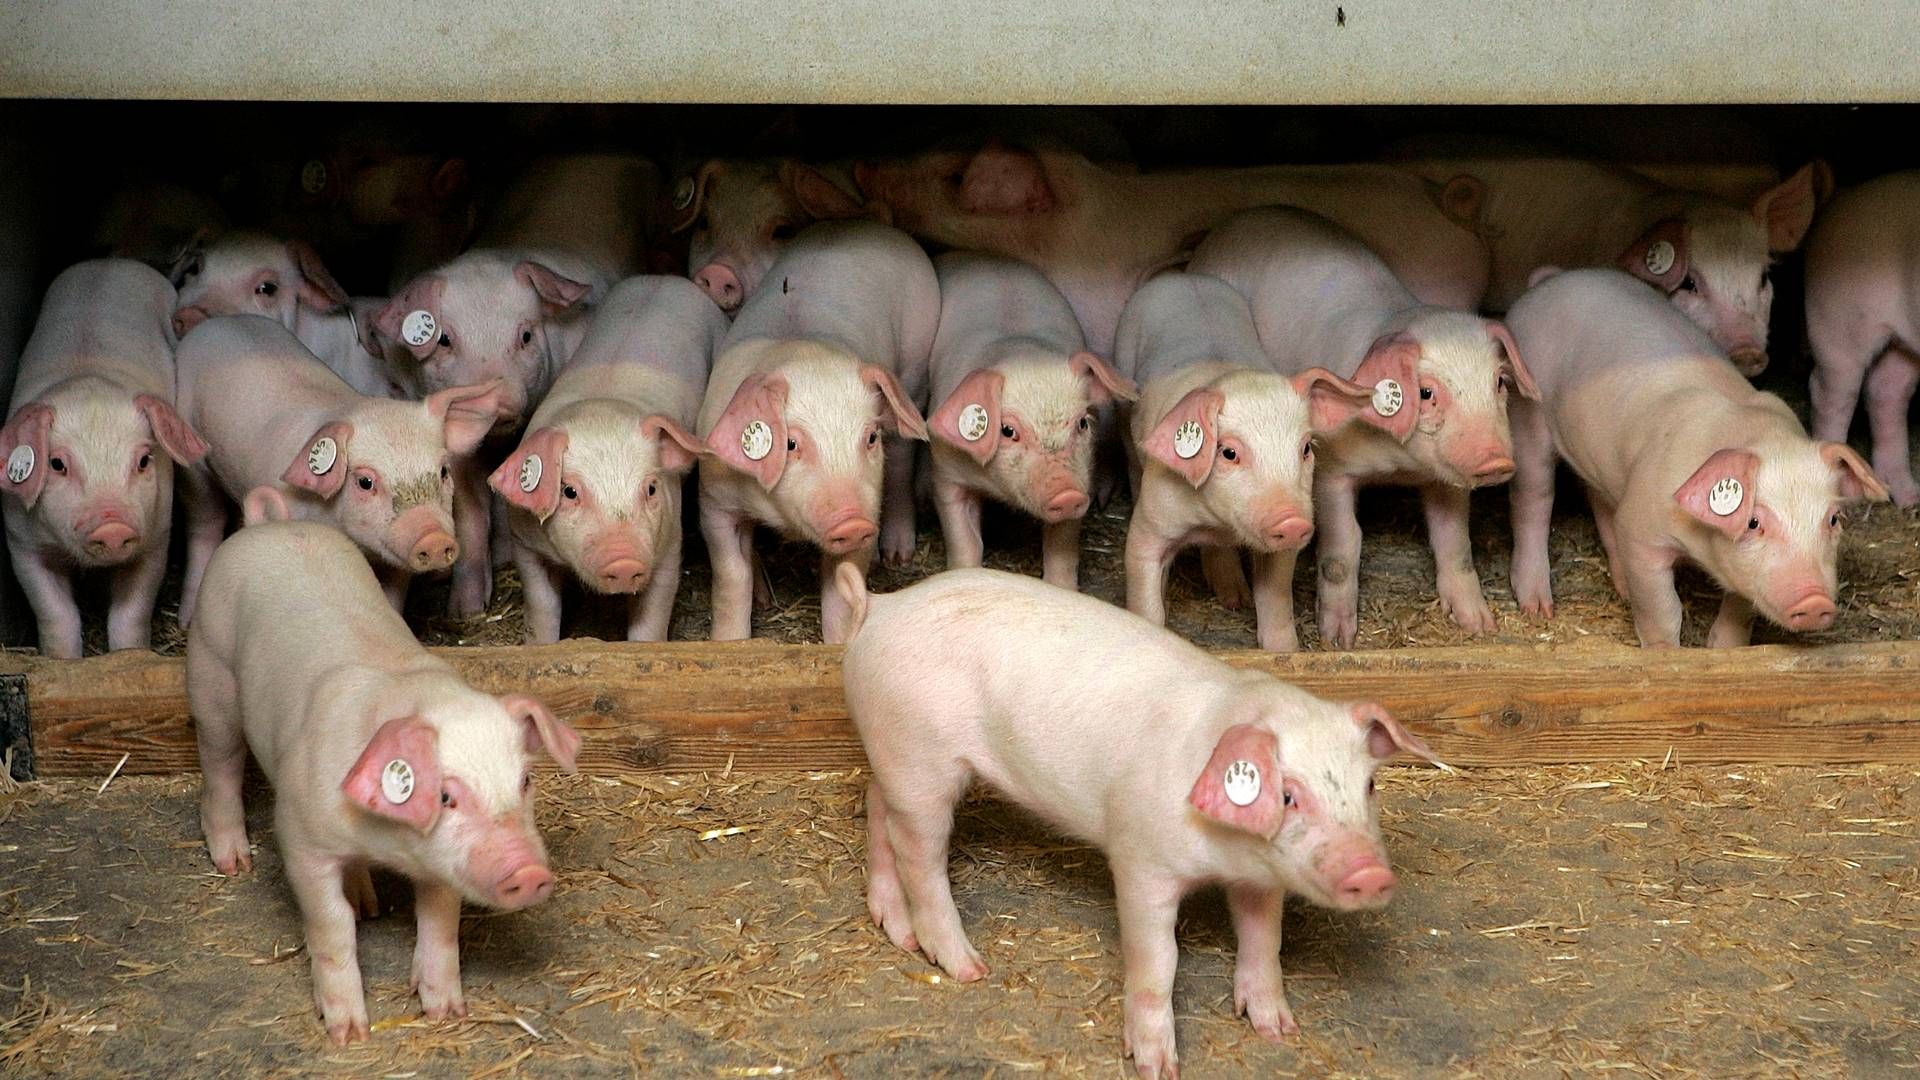 Selskabet Porc-Ex, som er ét af Bøgebjerg Holdings datterselskaber, beskæftiger sig med griseeksport, men søsterselskabet Pecus eksporterer kvæg. | Foto: Finn Frandsen/Politiken/Ritzau Scanpix